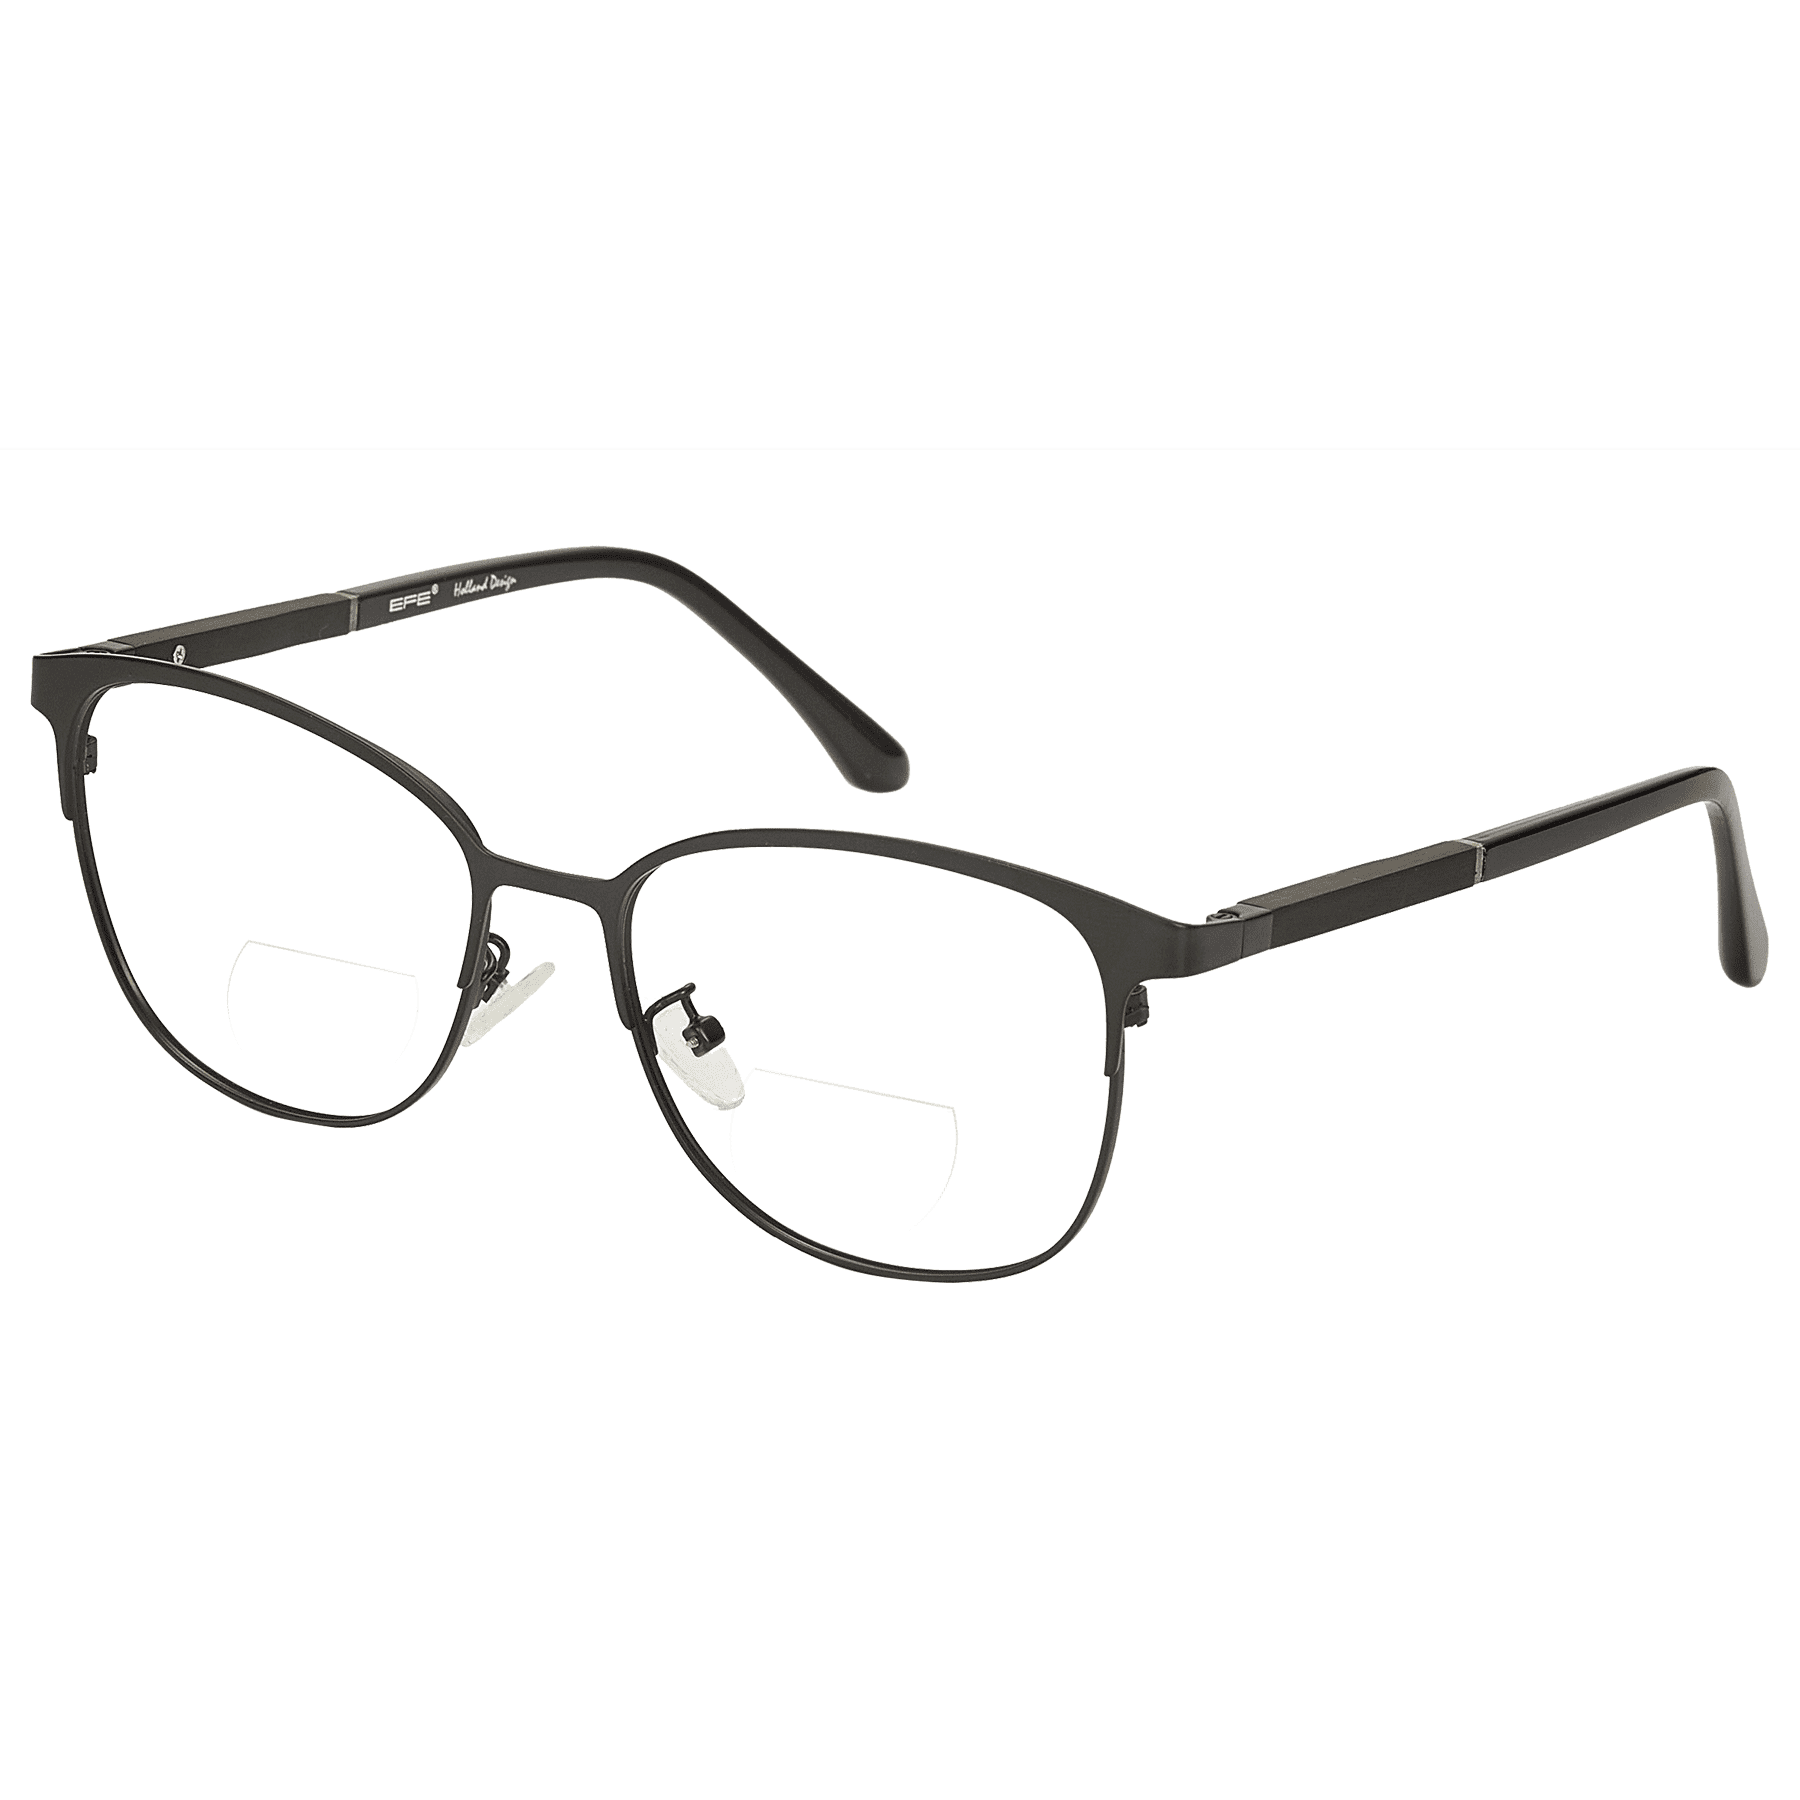 Hypnus - Square Black Reading Glasses for Men